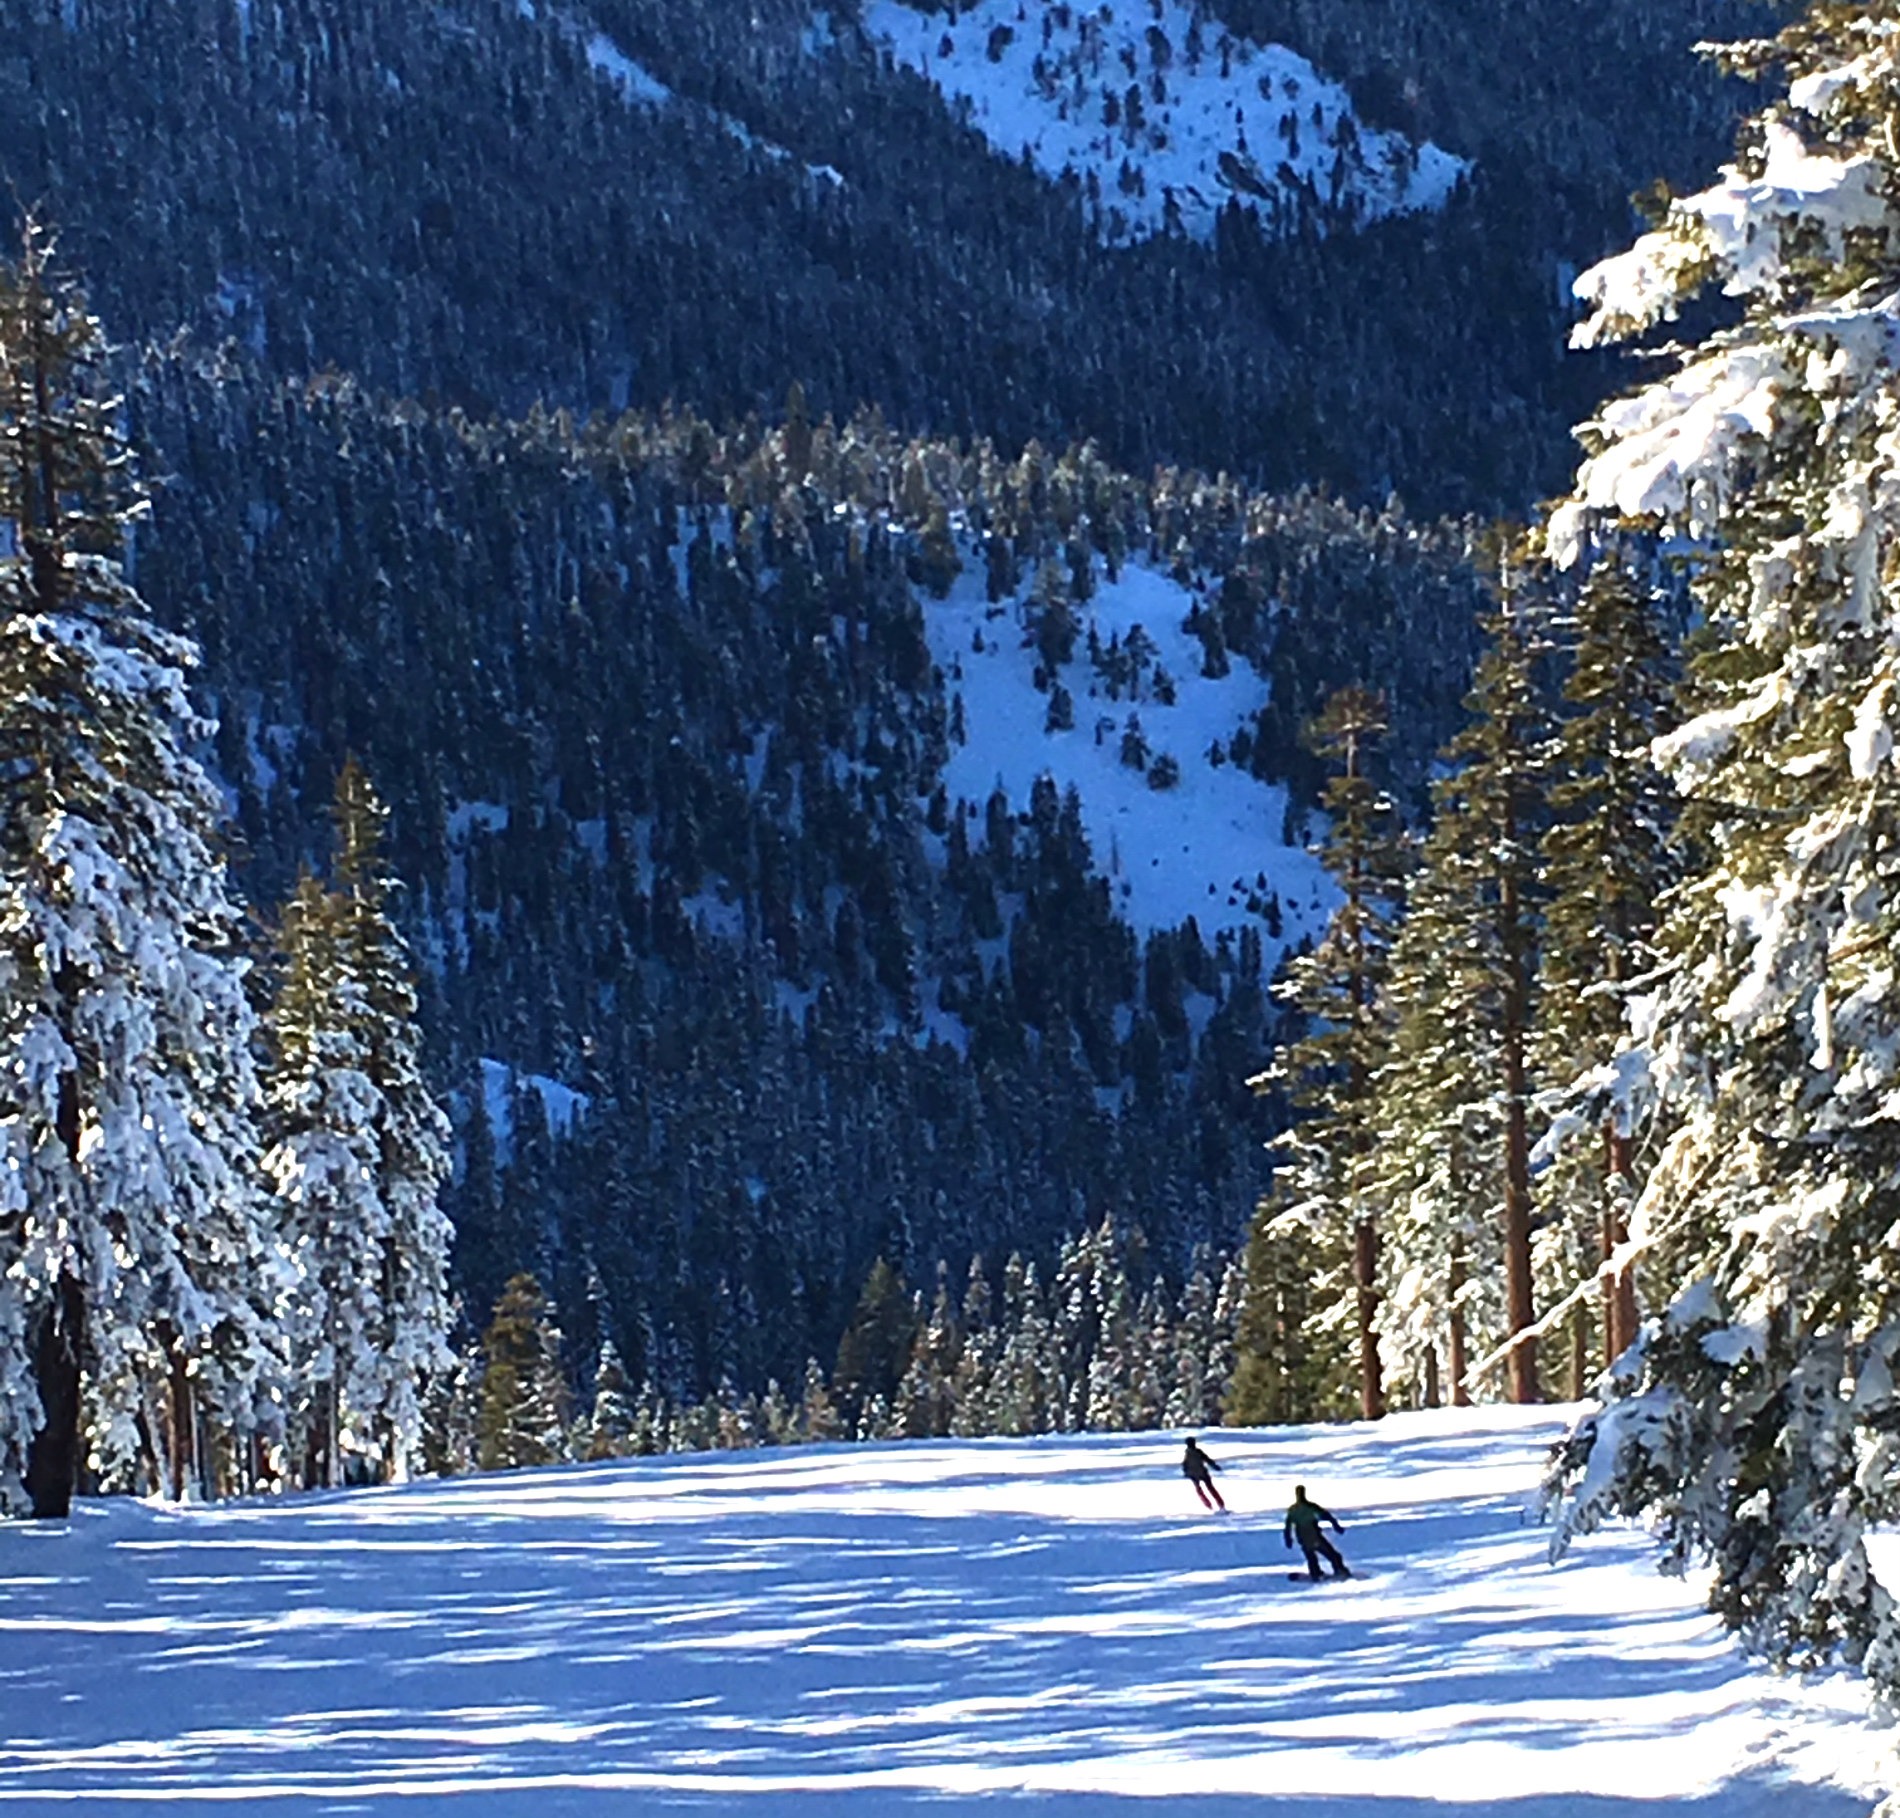 Ski season in Lake Tahoe is nearing. Northstar ski resort opening is